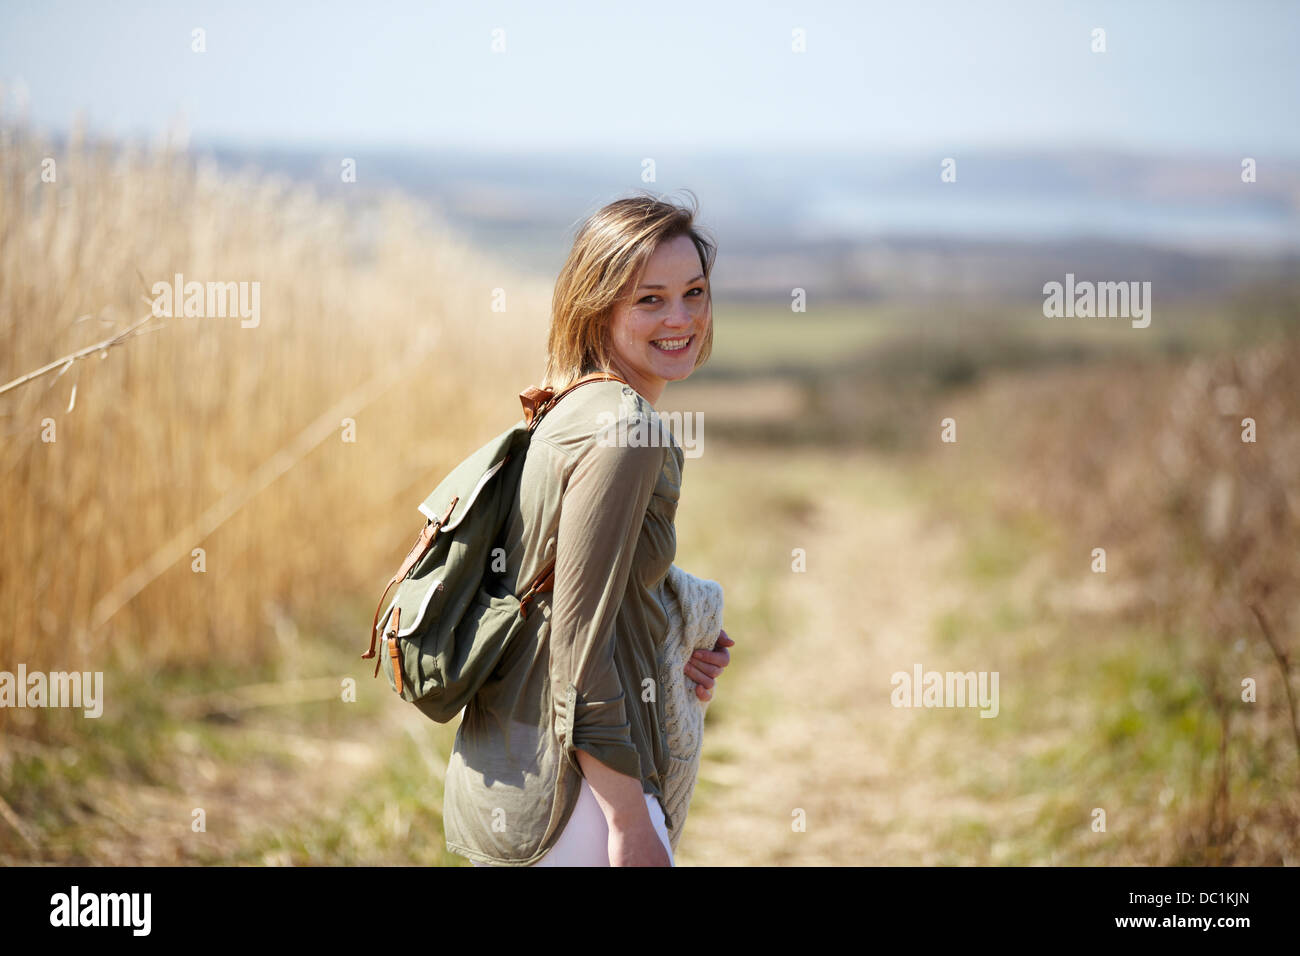 Ritratto di giovane donna su sterrato accanto al campo delle canne Foto Stock